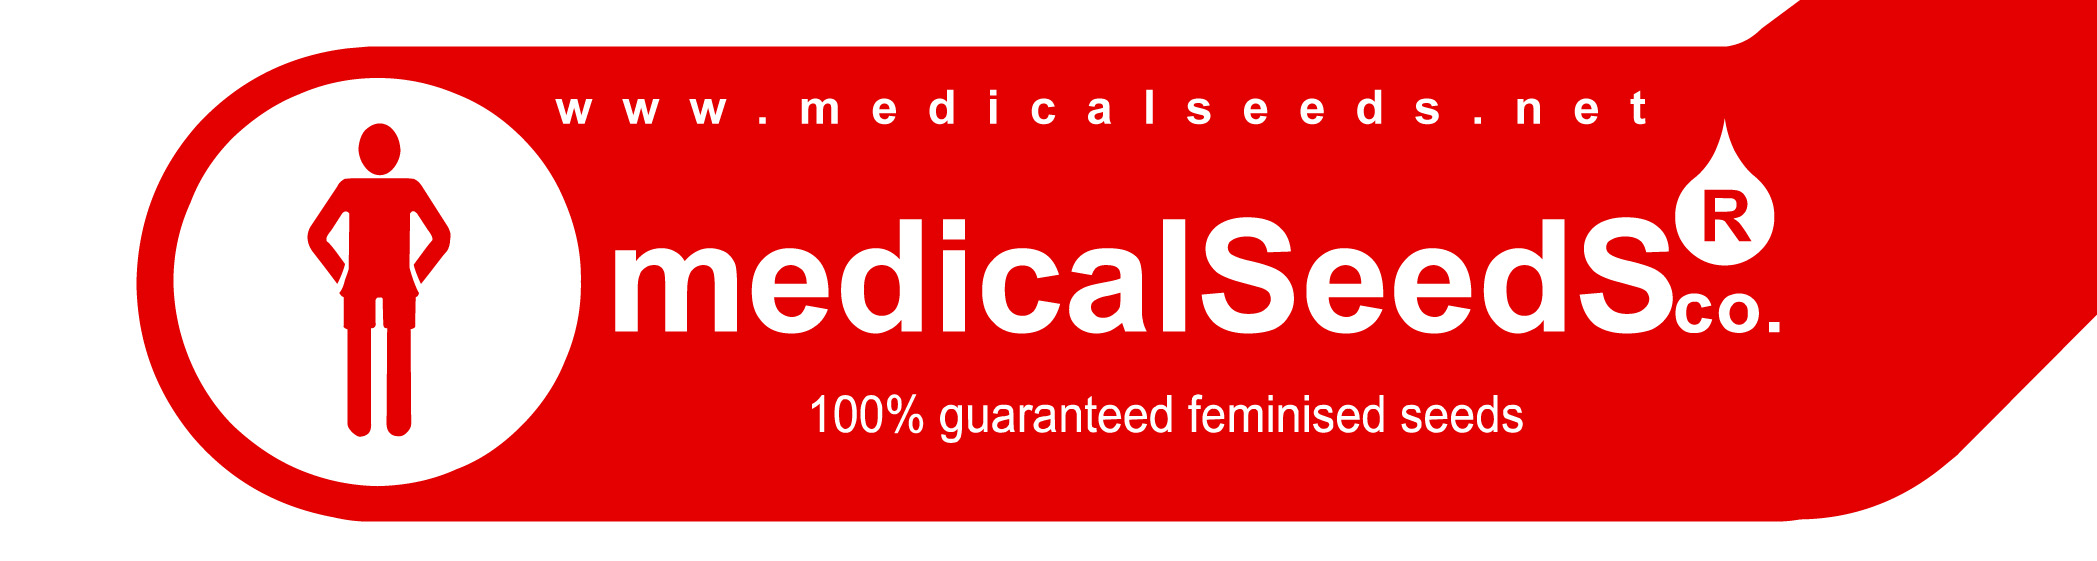 medical_seeds_logo2